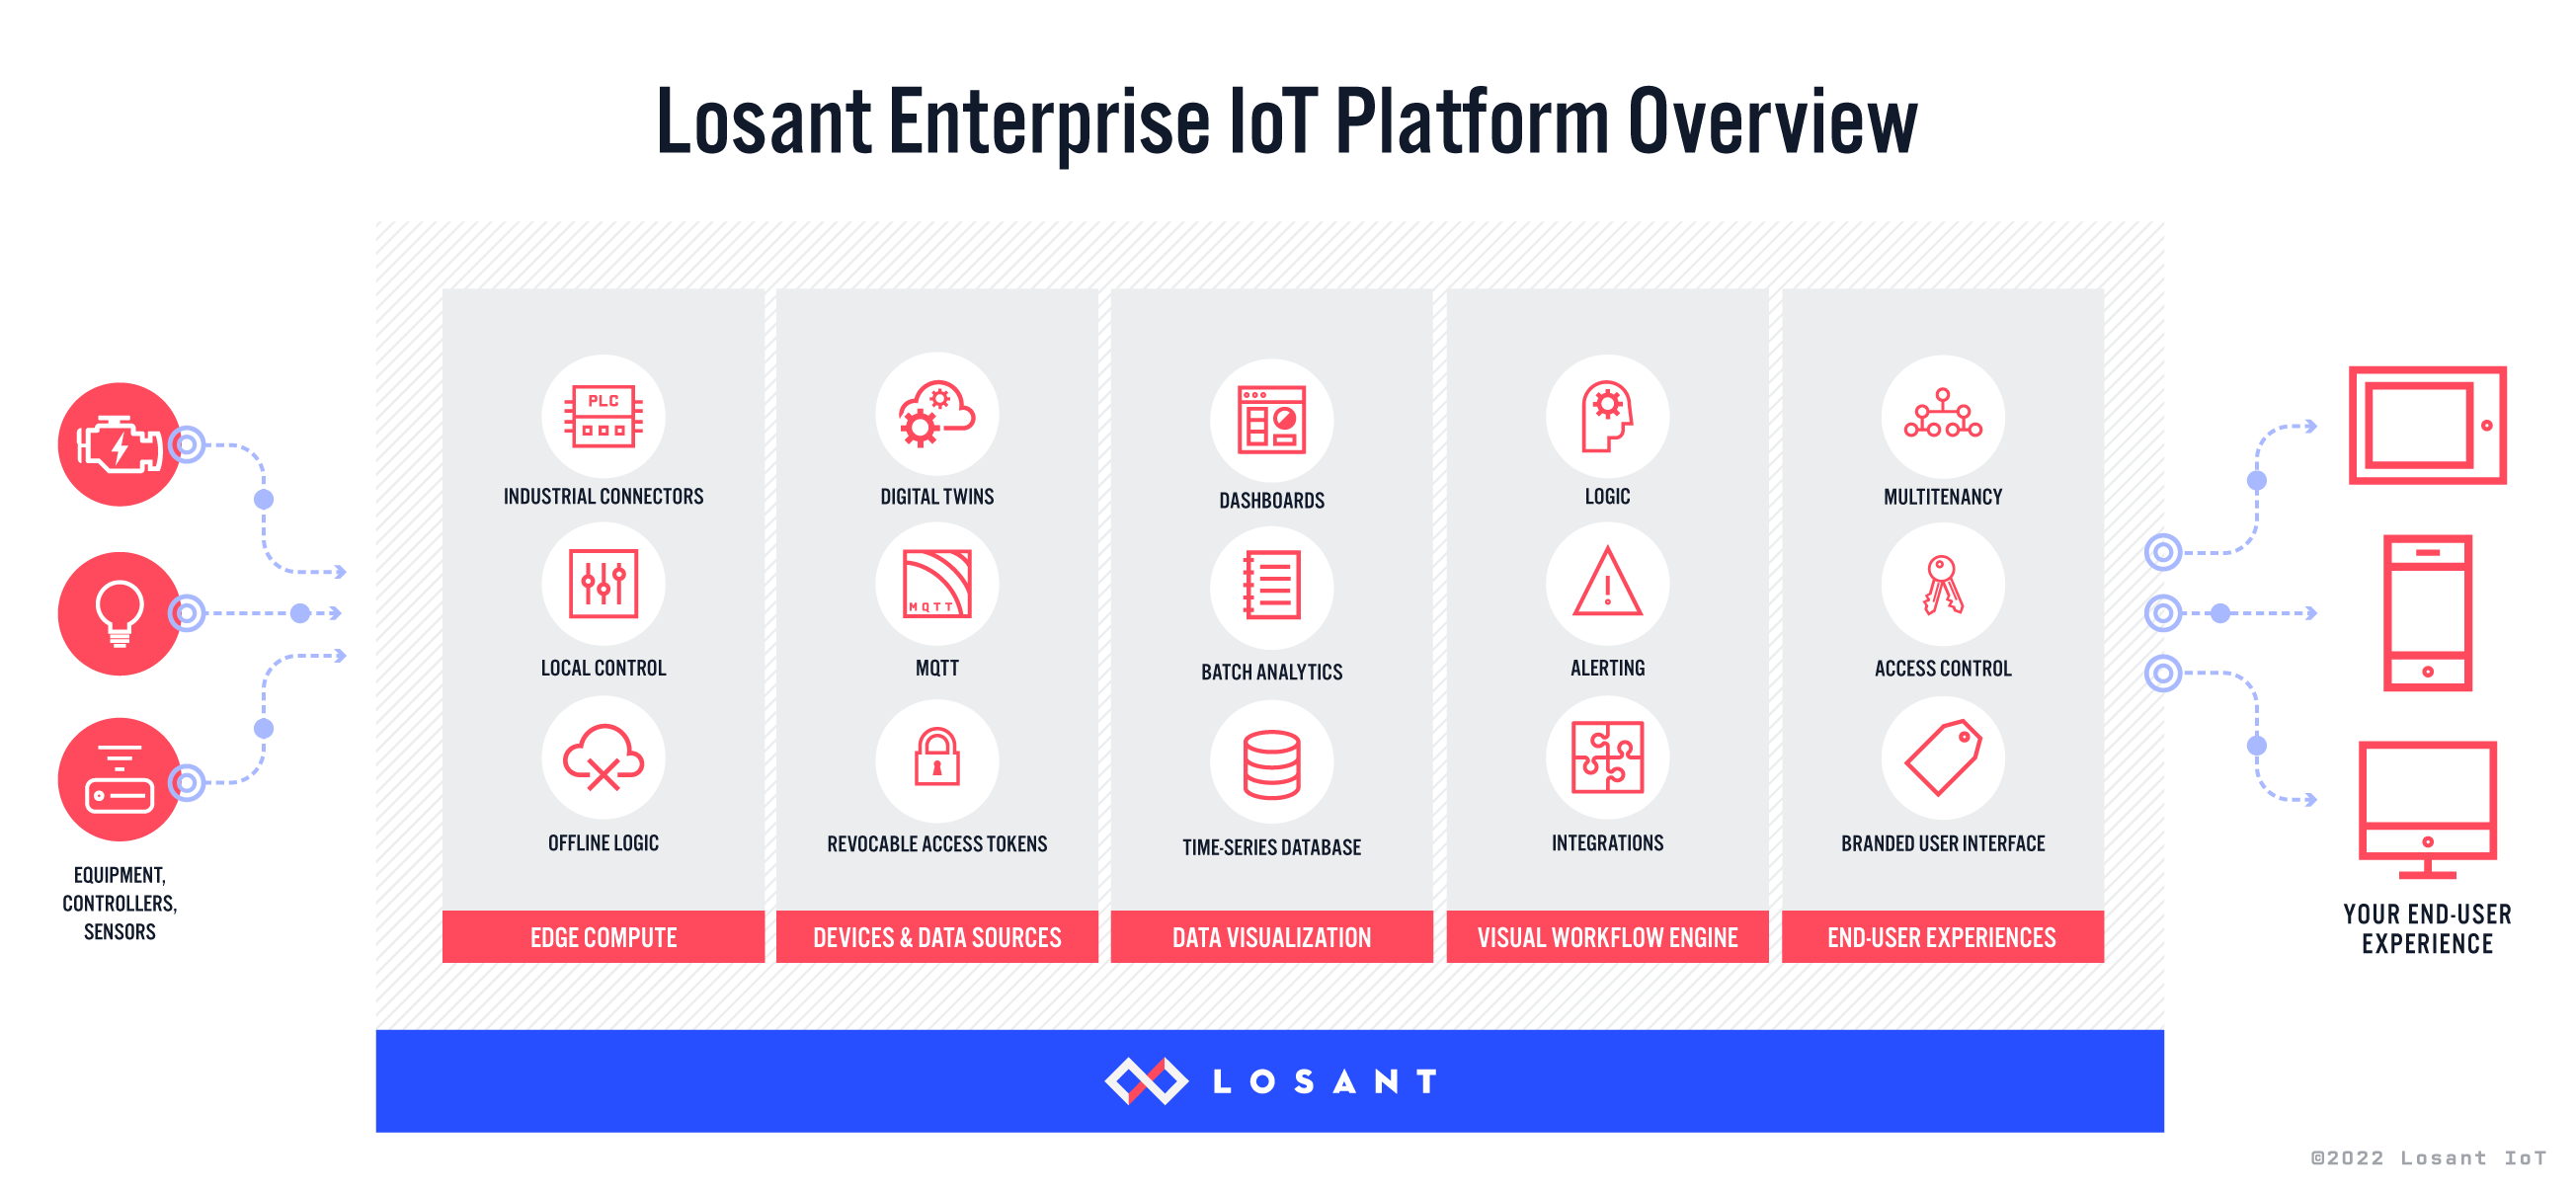 Losant Enterprise IoT Platform